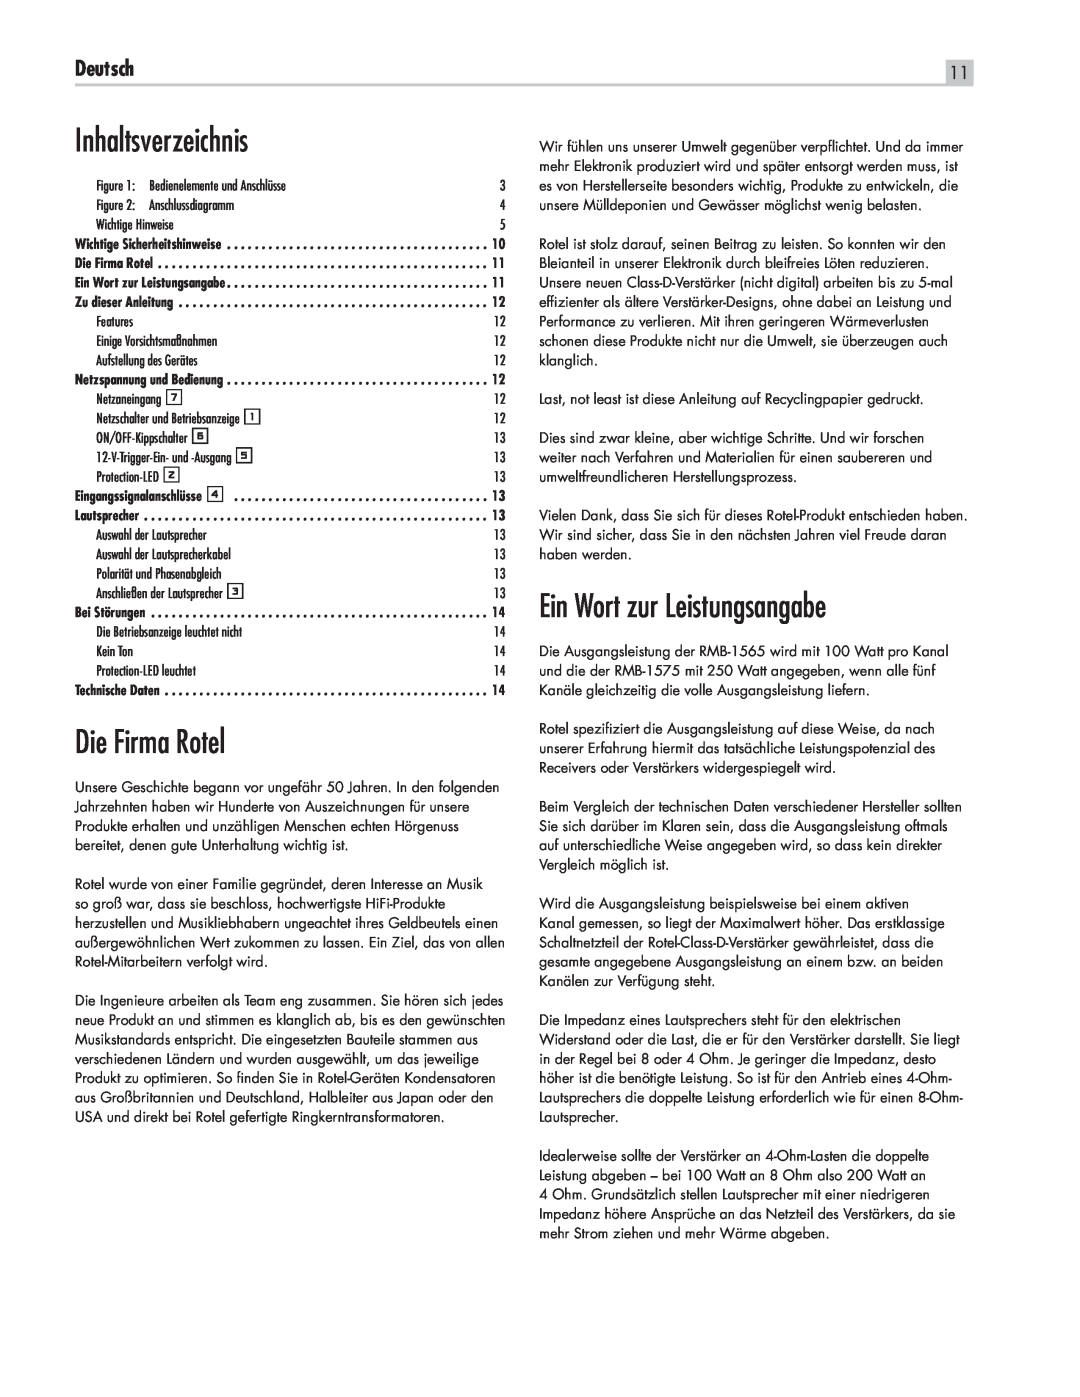 Rotel RMB-1565, RMB1575BK manual Inhaltsverzeichnis, Die Firma Rotel, Ein Wort zur Leistungsangabe, Deutsch 